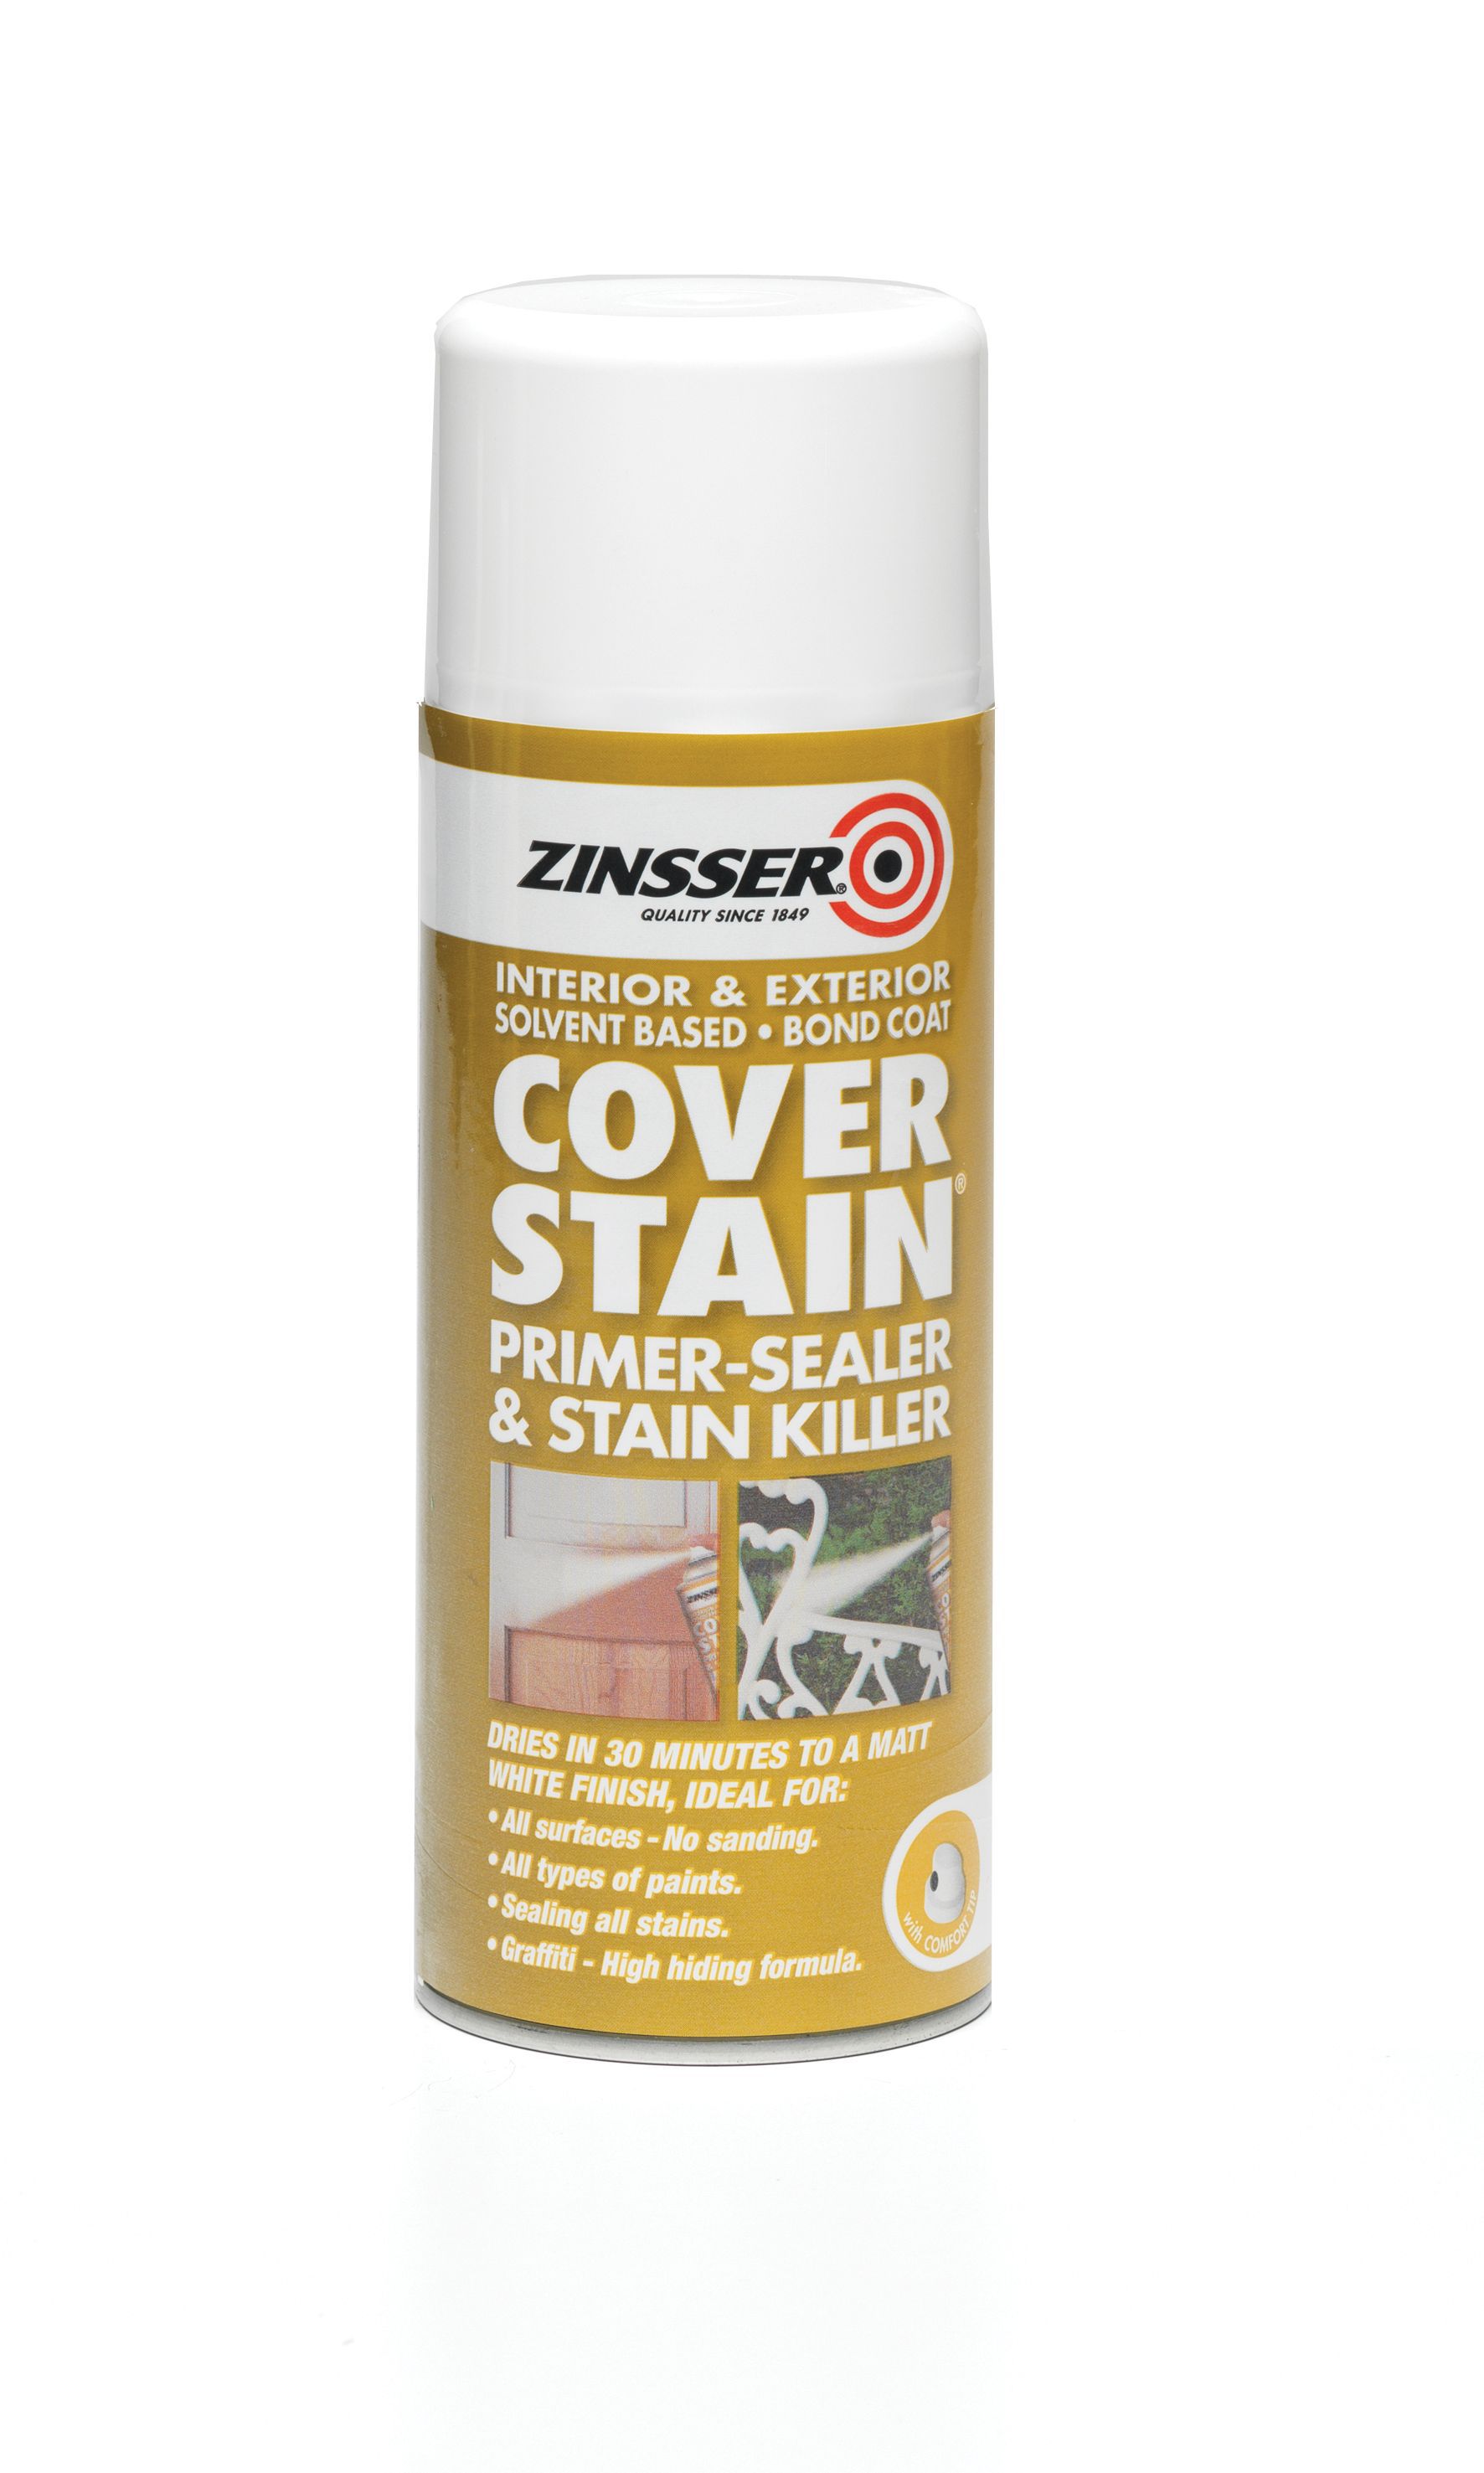 Zinsser Cover Stain Primer Sealer 0 4l Departments Diy At B Q